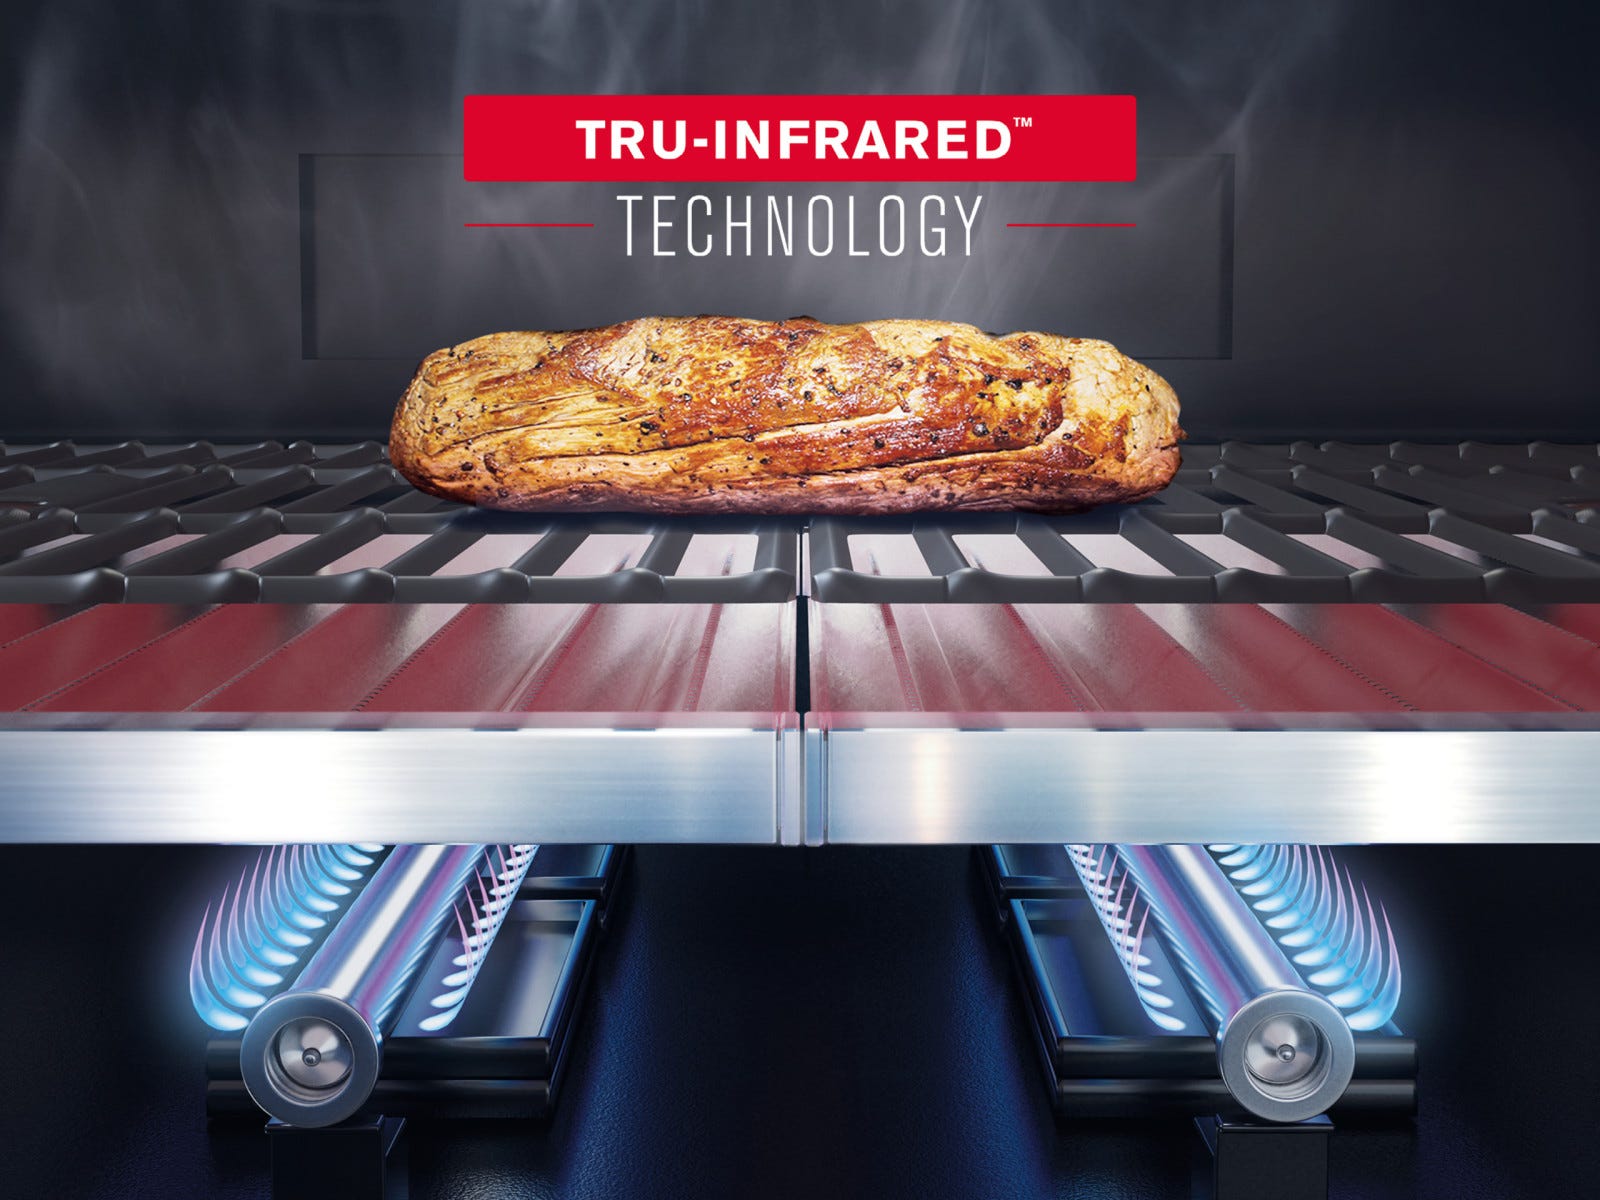 Des grillades plus juteuses que jamais avec la TRU-Infrared™ Technology